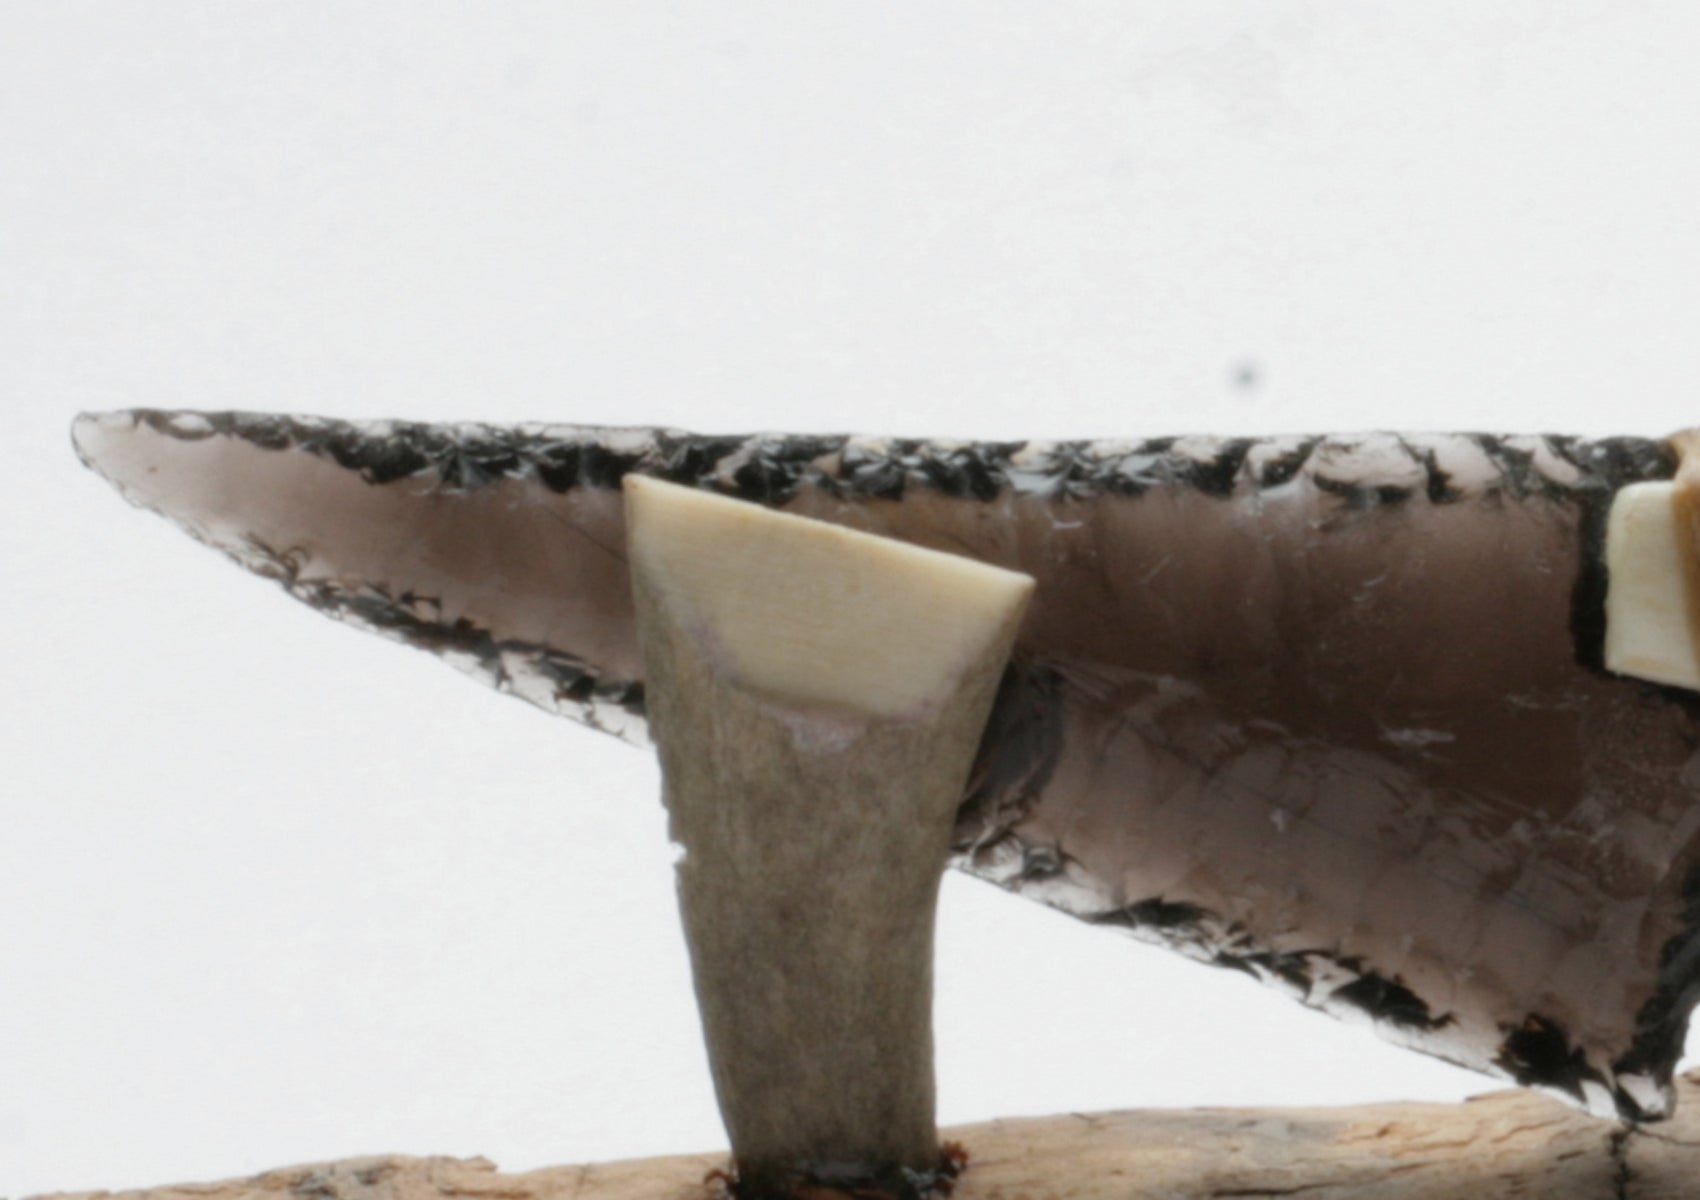 Transparent Obsidian Knife with Deer Antler Handle